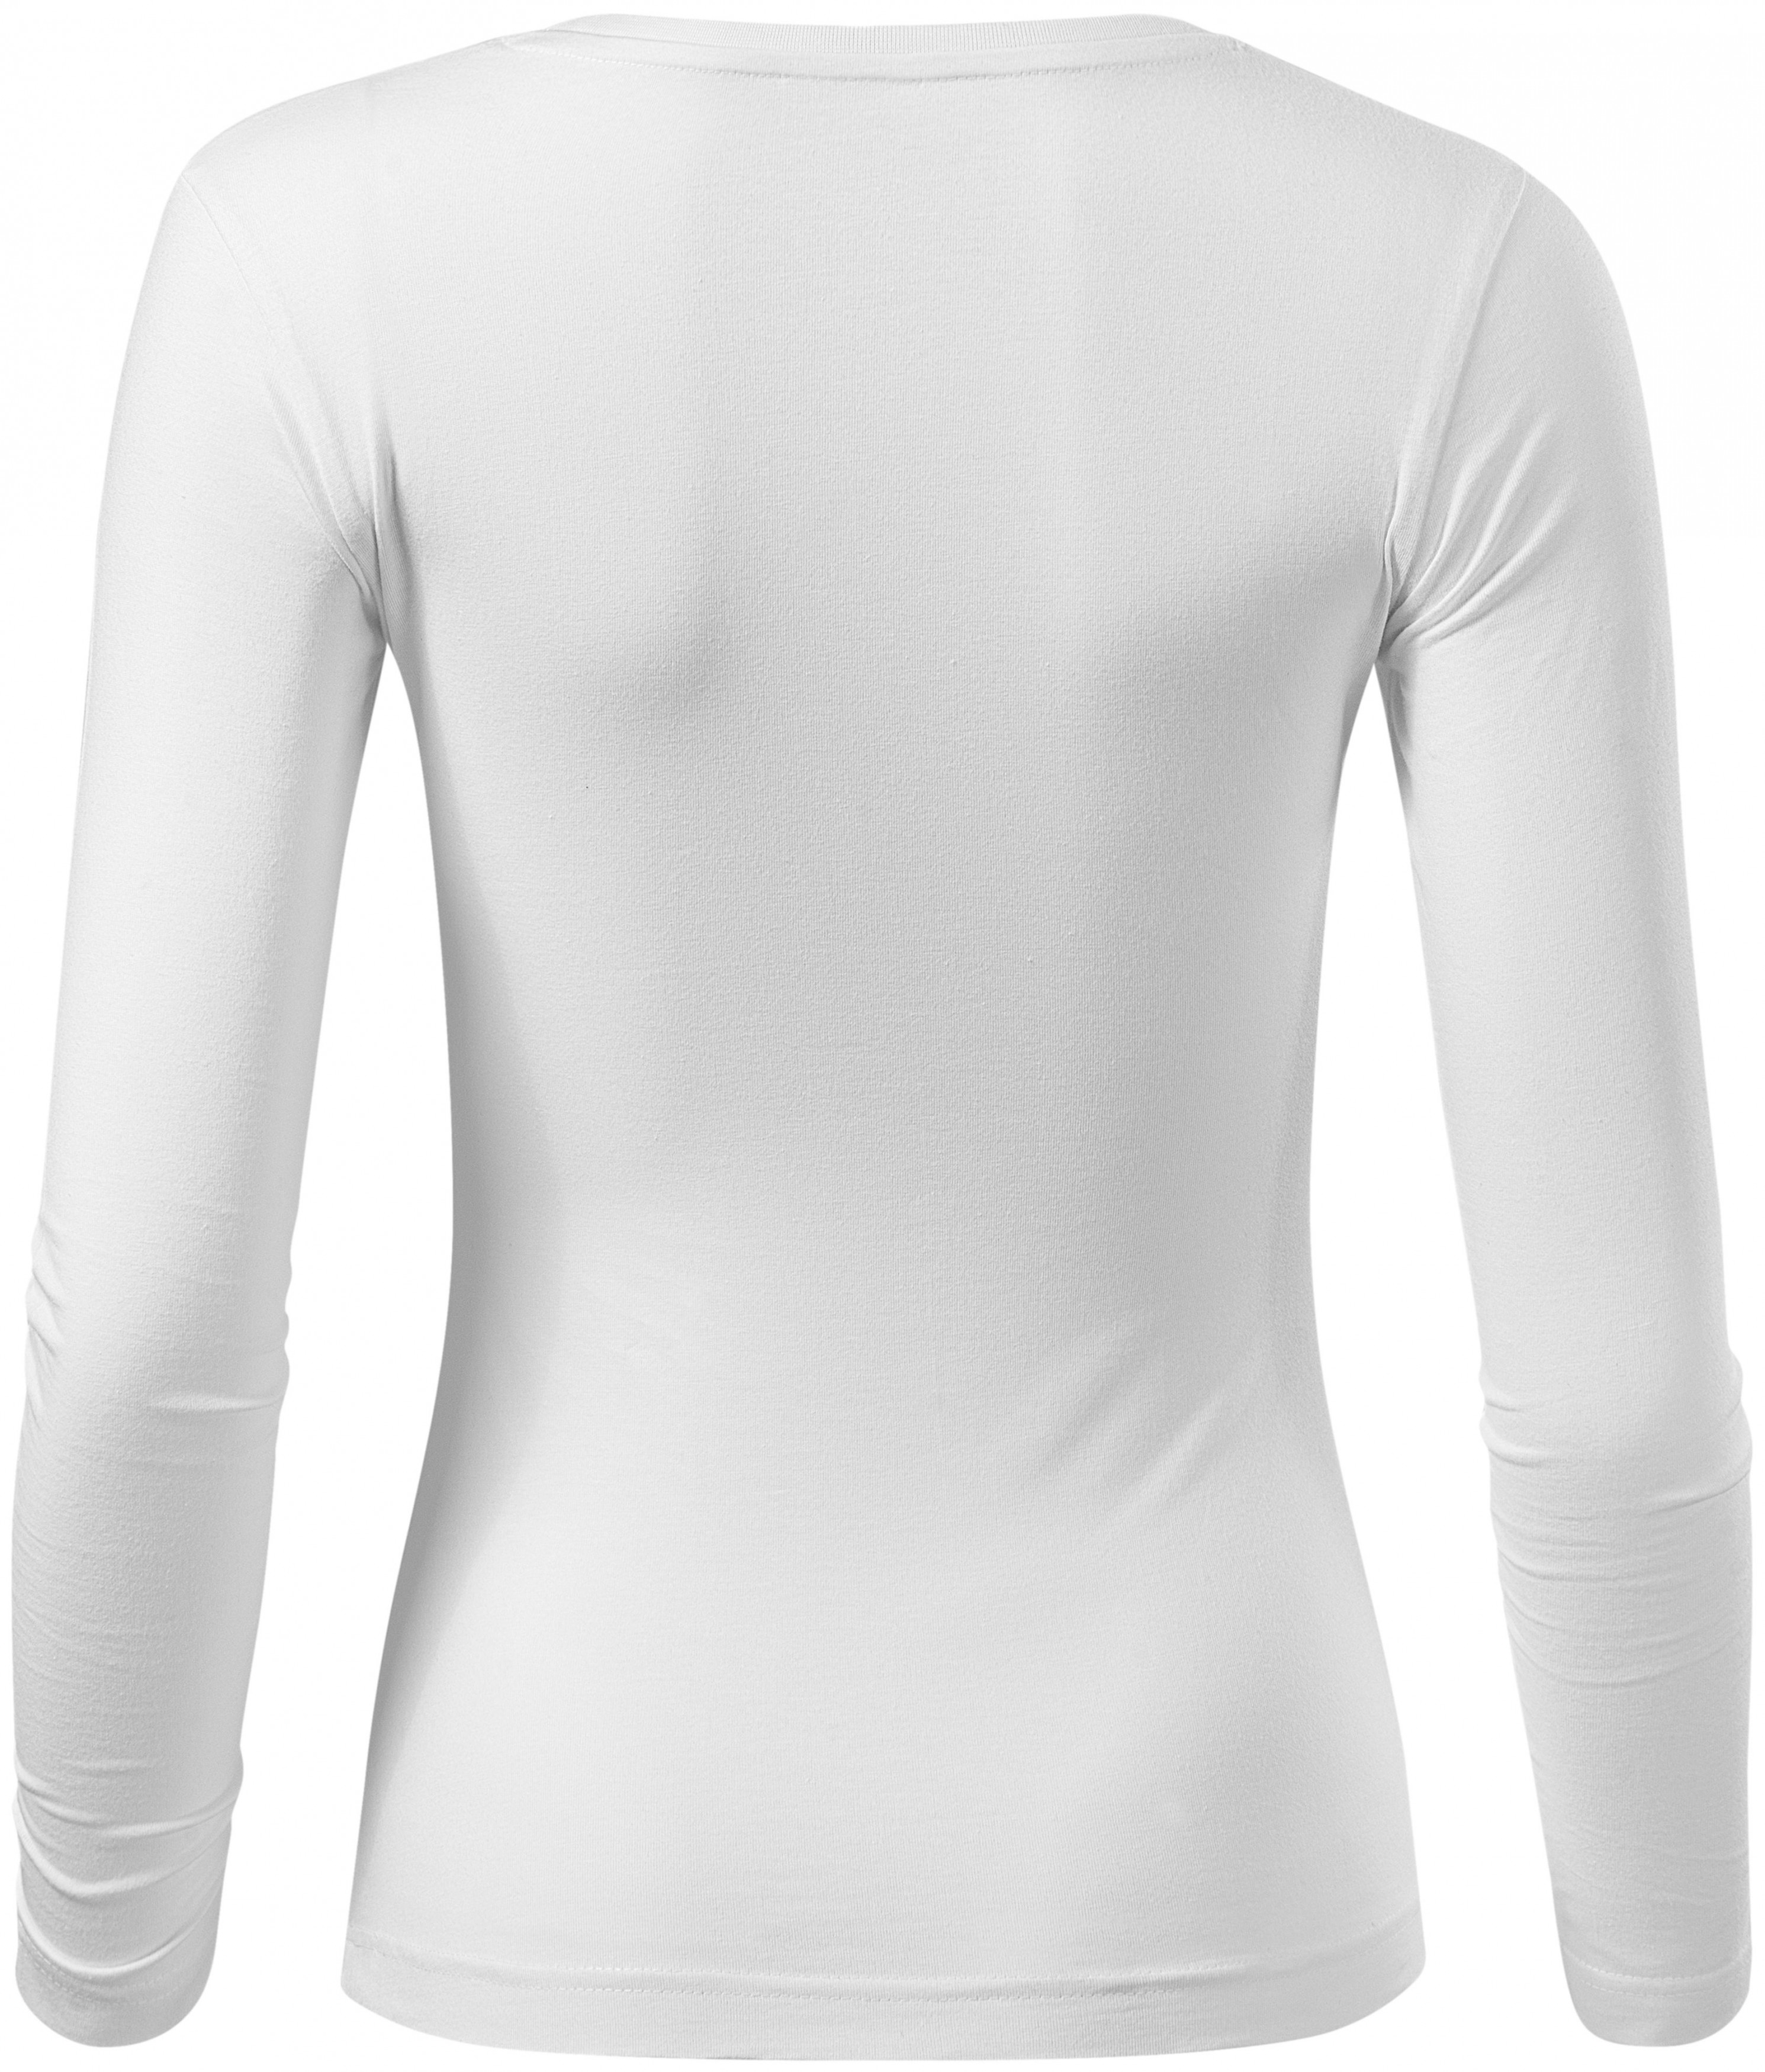 Hosszú ujjú női póló, fehér, XL | TisztaRuhákat.hu